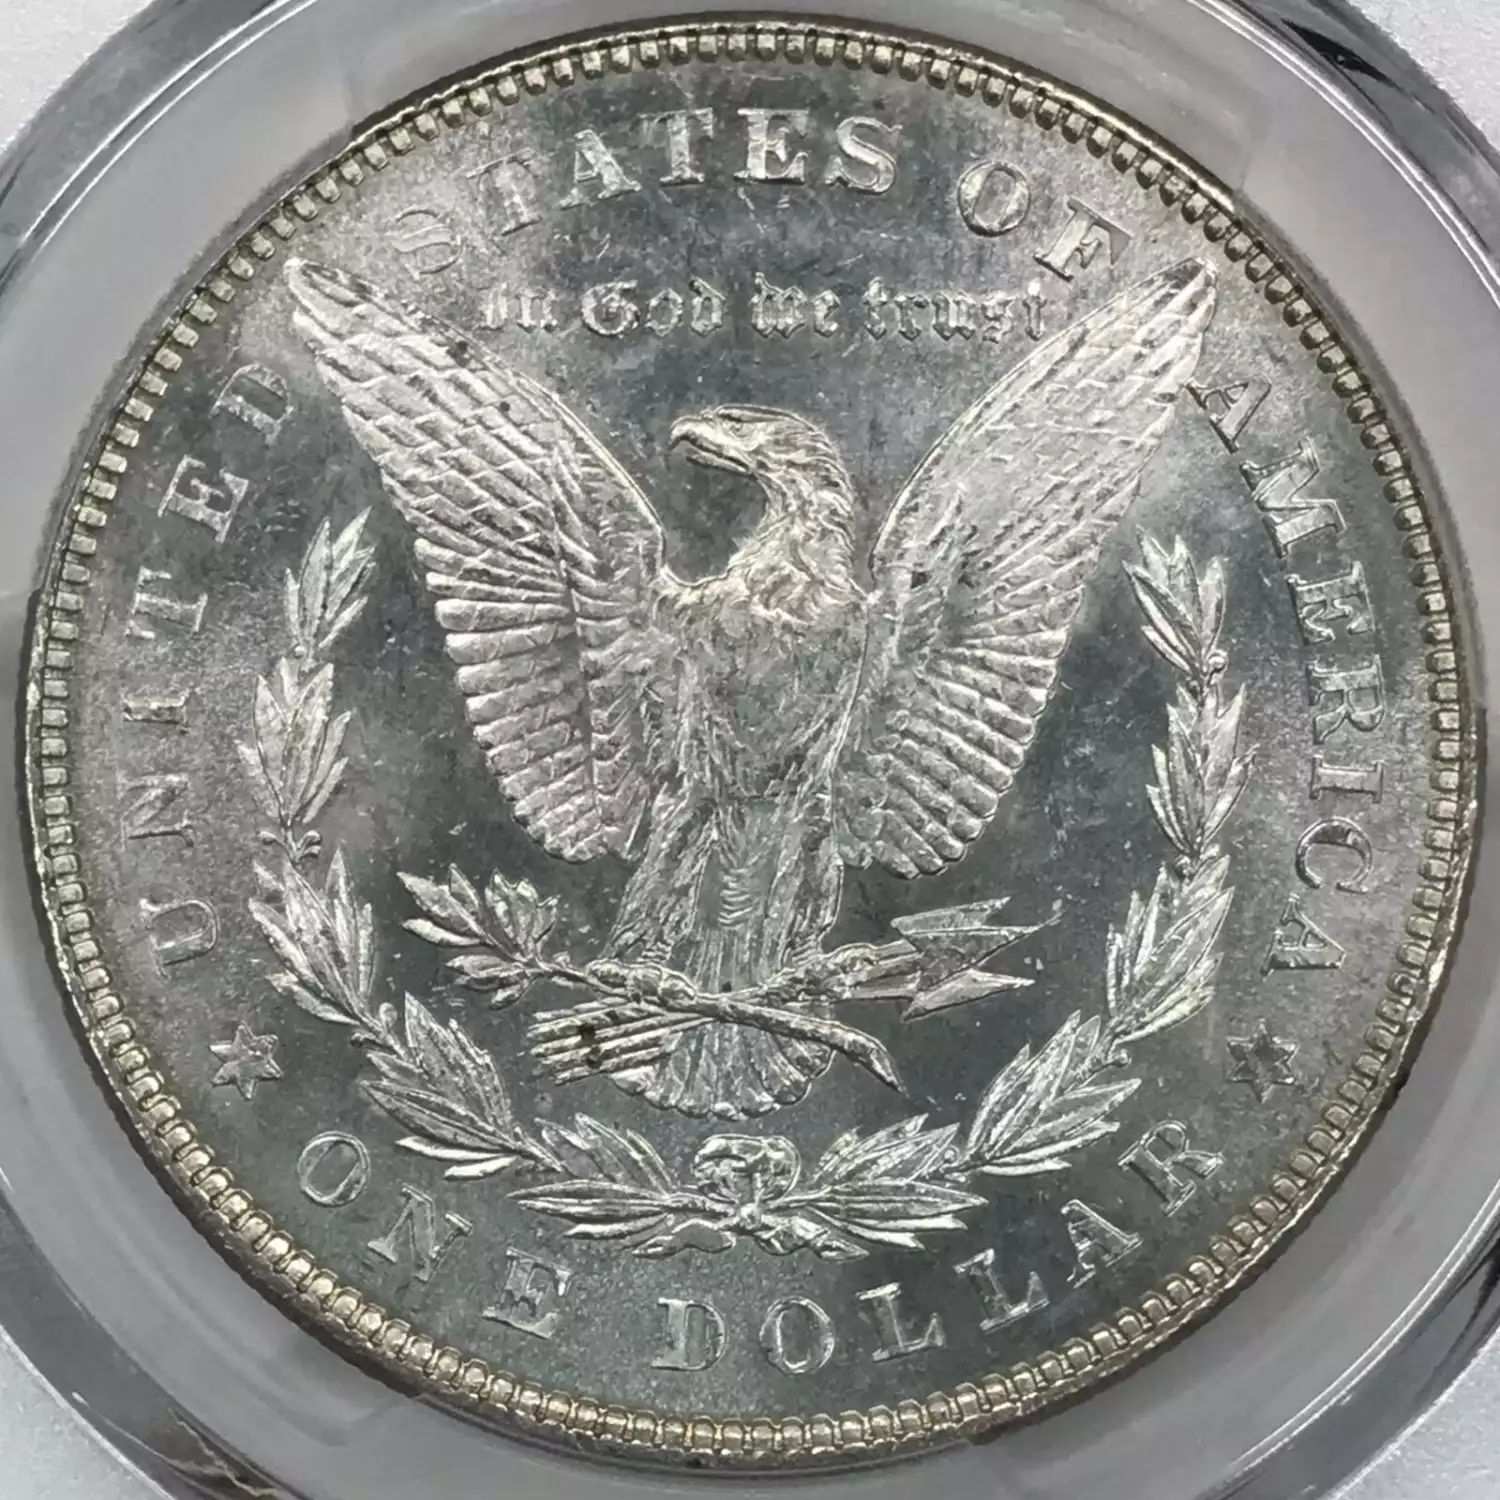 1878 7/8TF $1 Weak